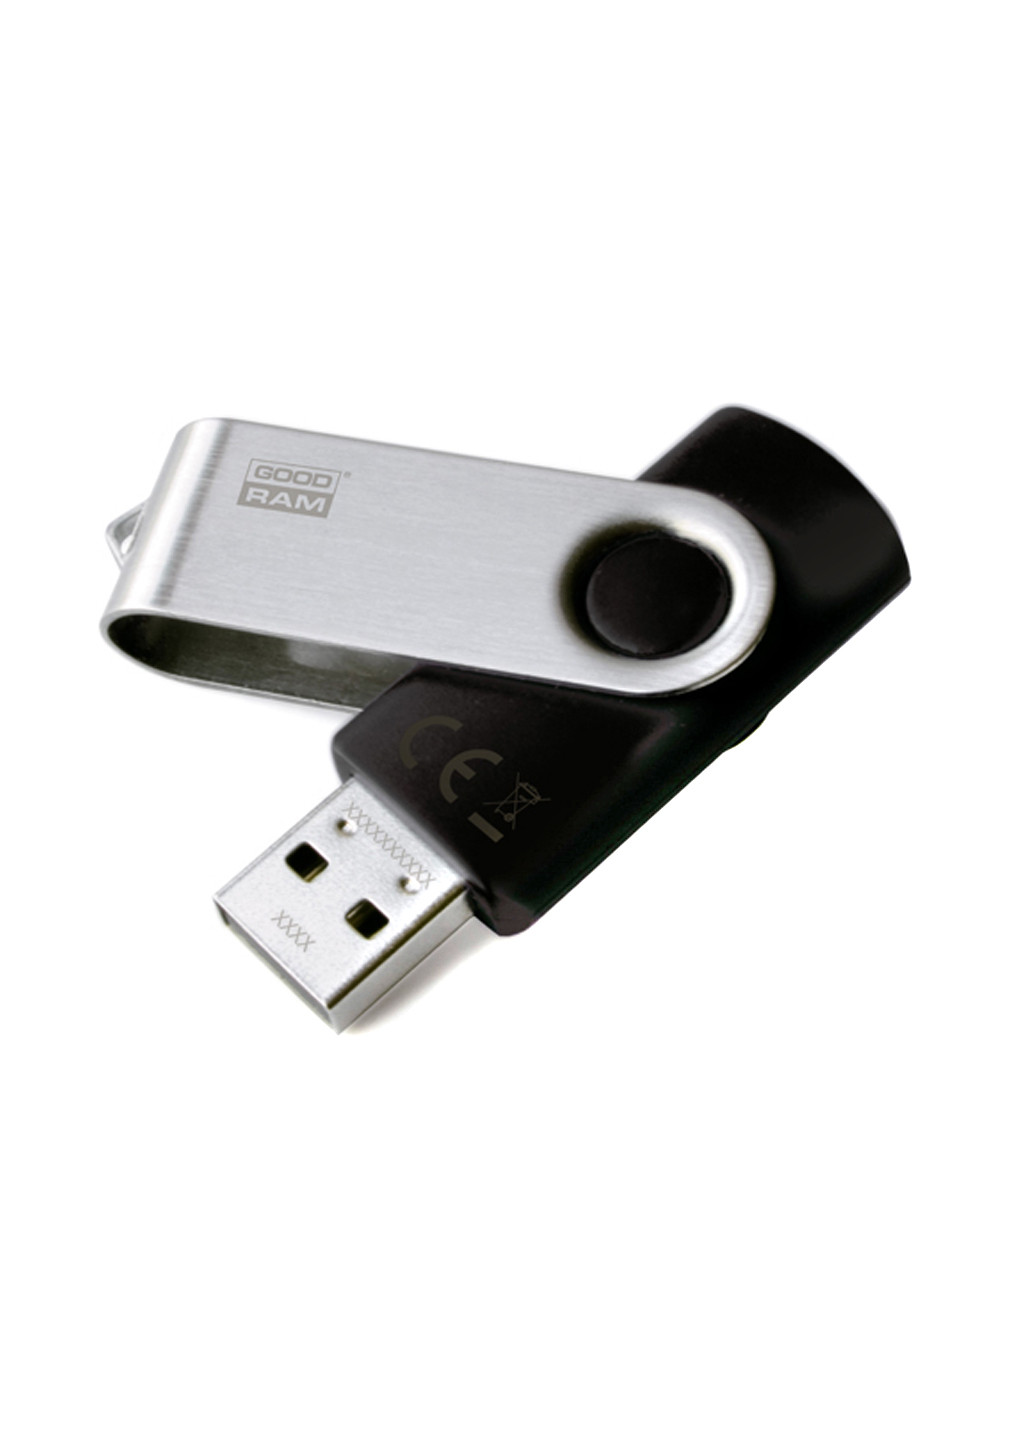 Флеш пам'ять USB UTS3 64GB USB 3.0 Black (UTS3-0640K0R11) Goodram флеш память usb goodram uts3 64gb usb 3.0 black (uts3-0640k0r11) (136742788)